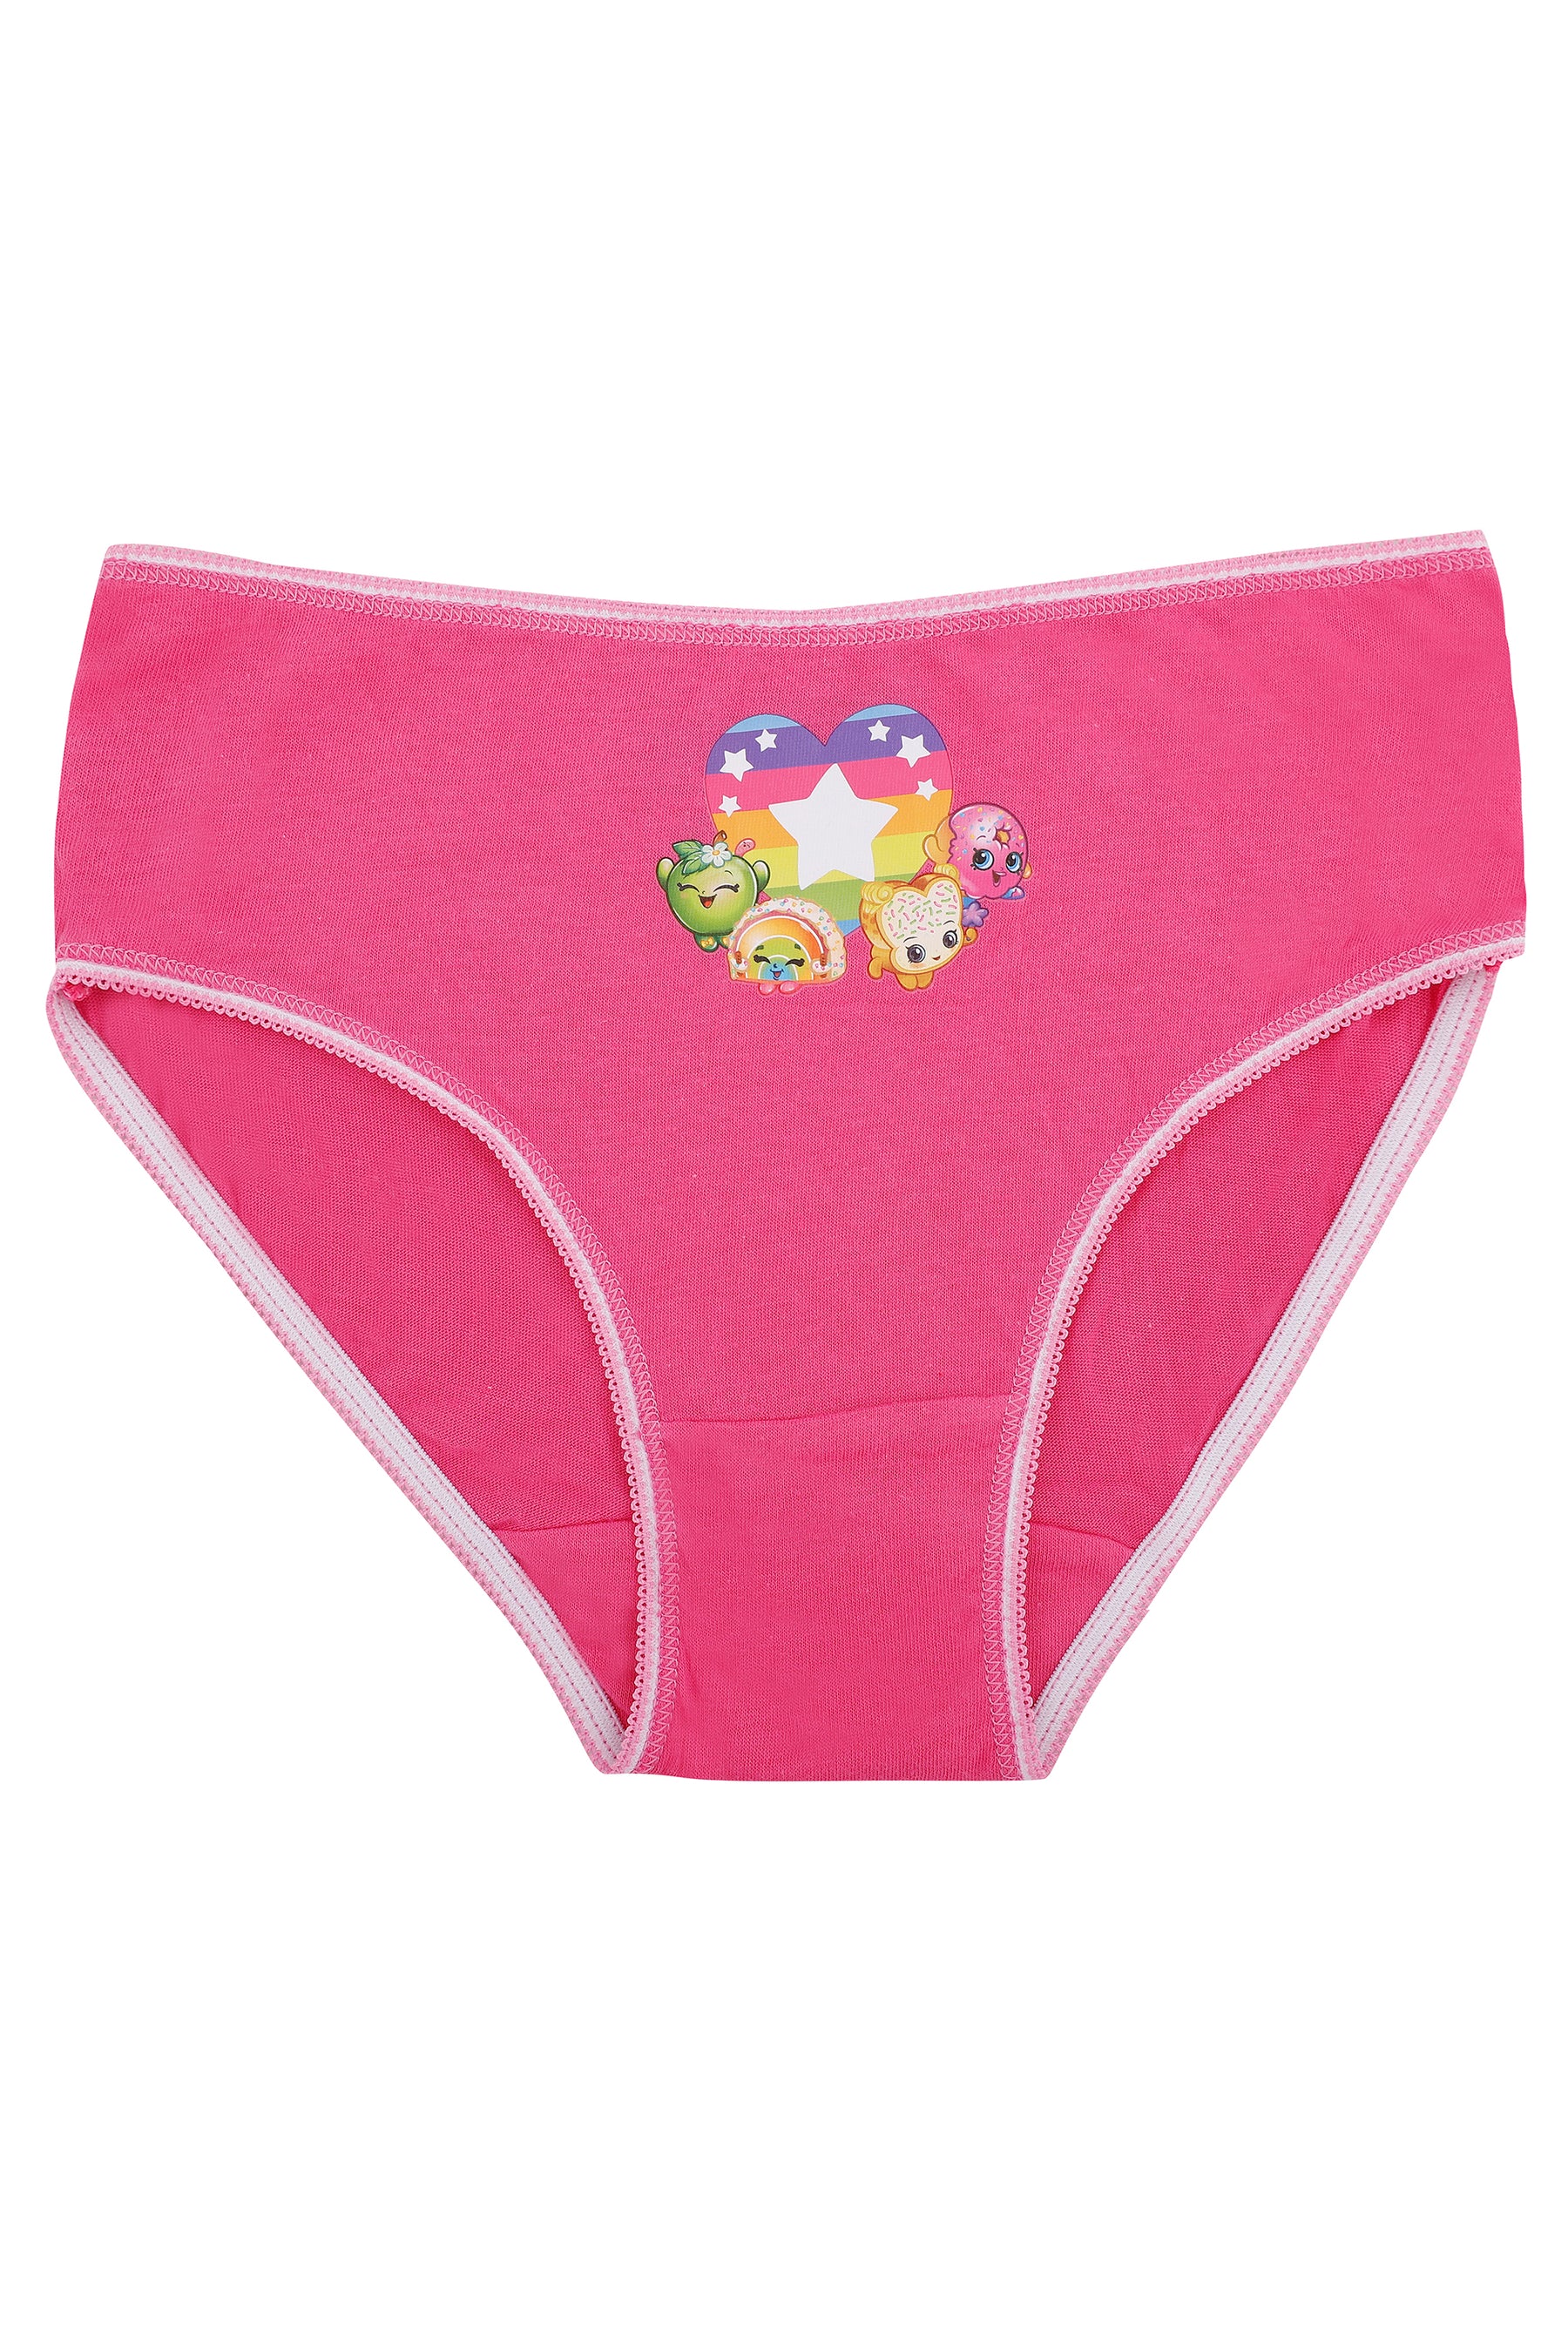 Shopkins Briefs Girls Shopkins In A Pack Briefs Underwear Age 3-8